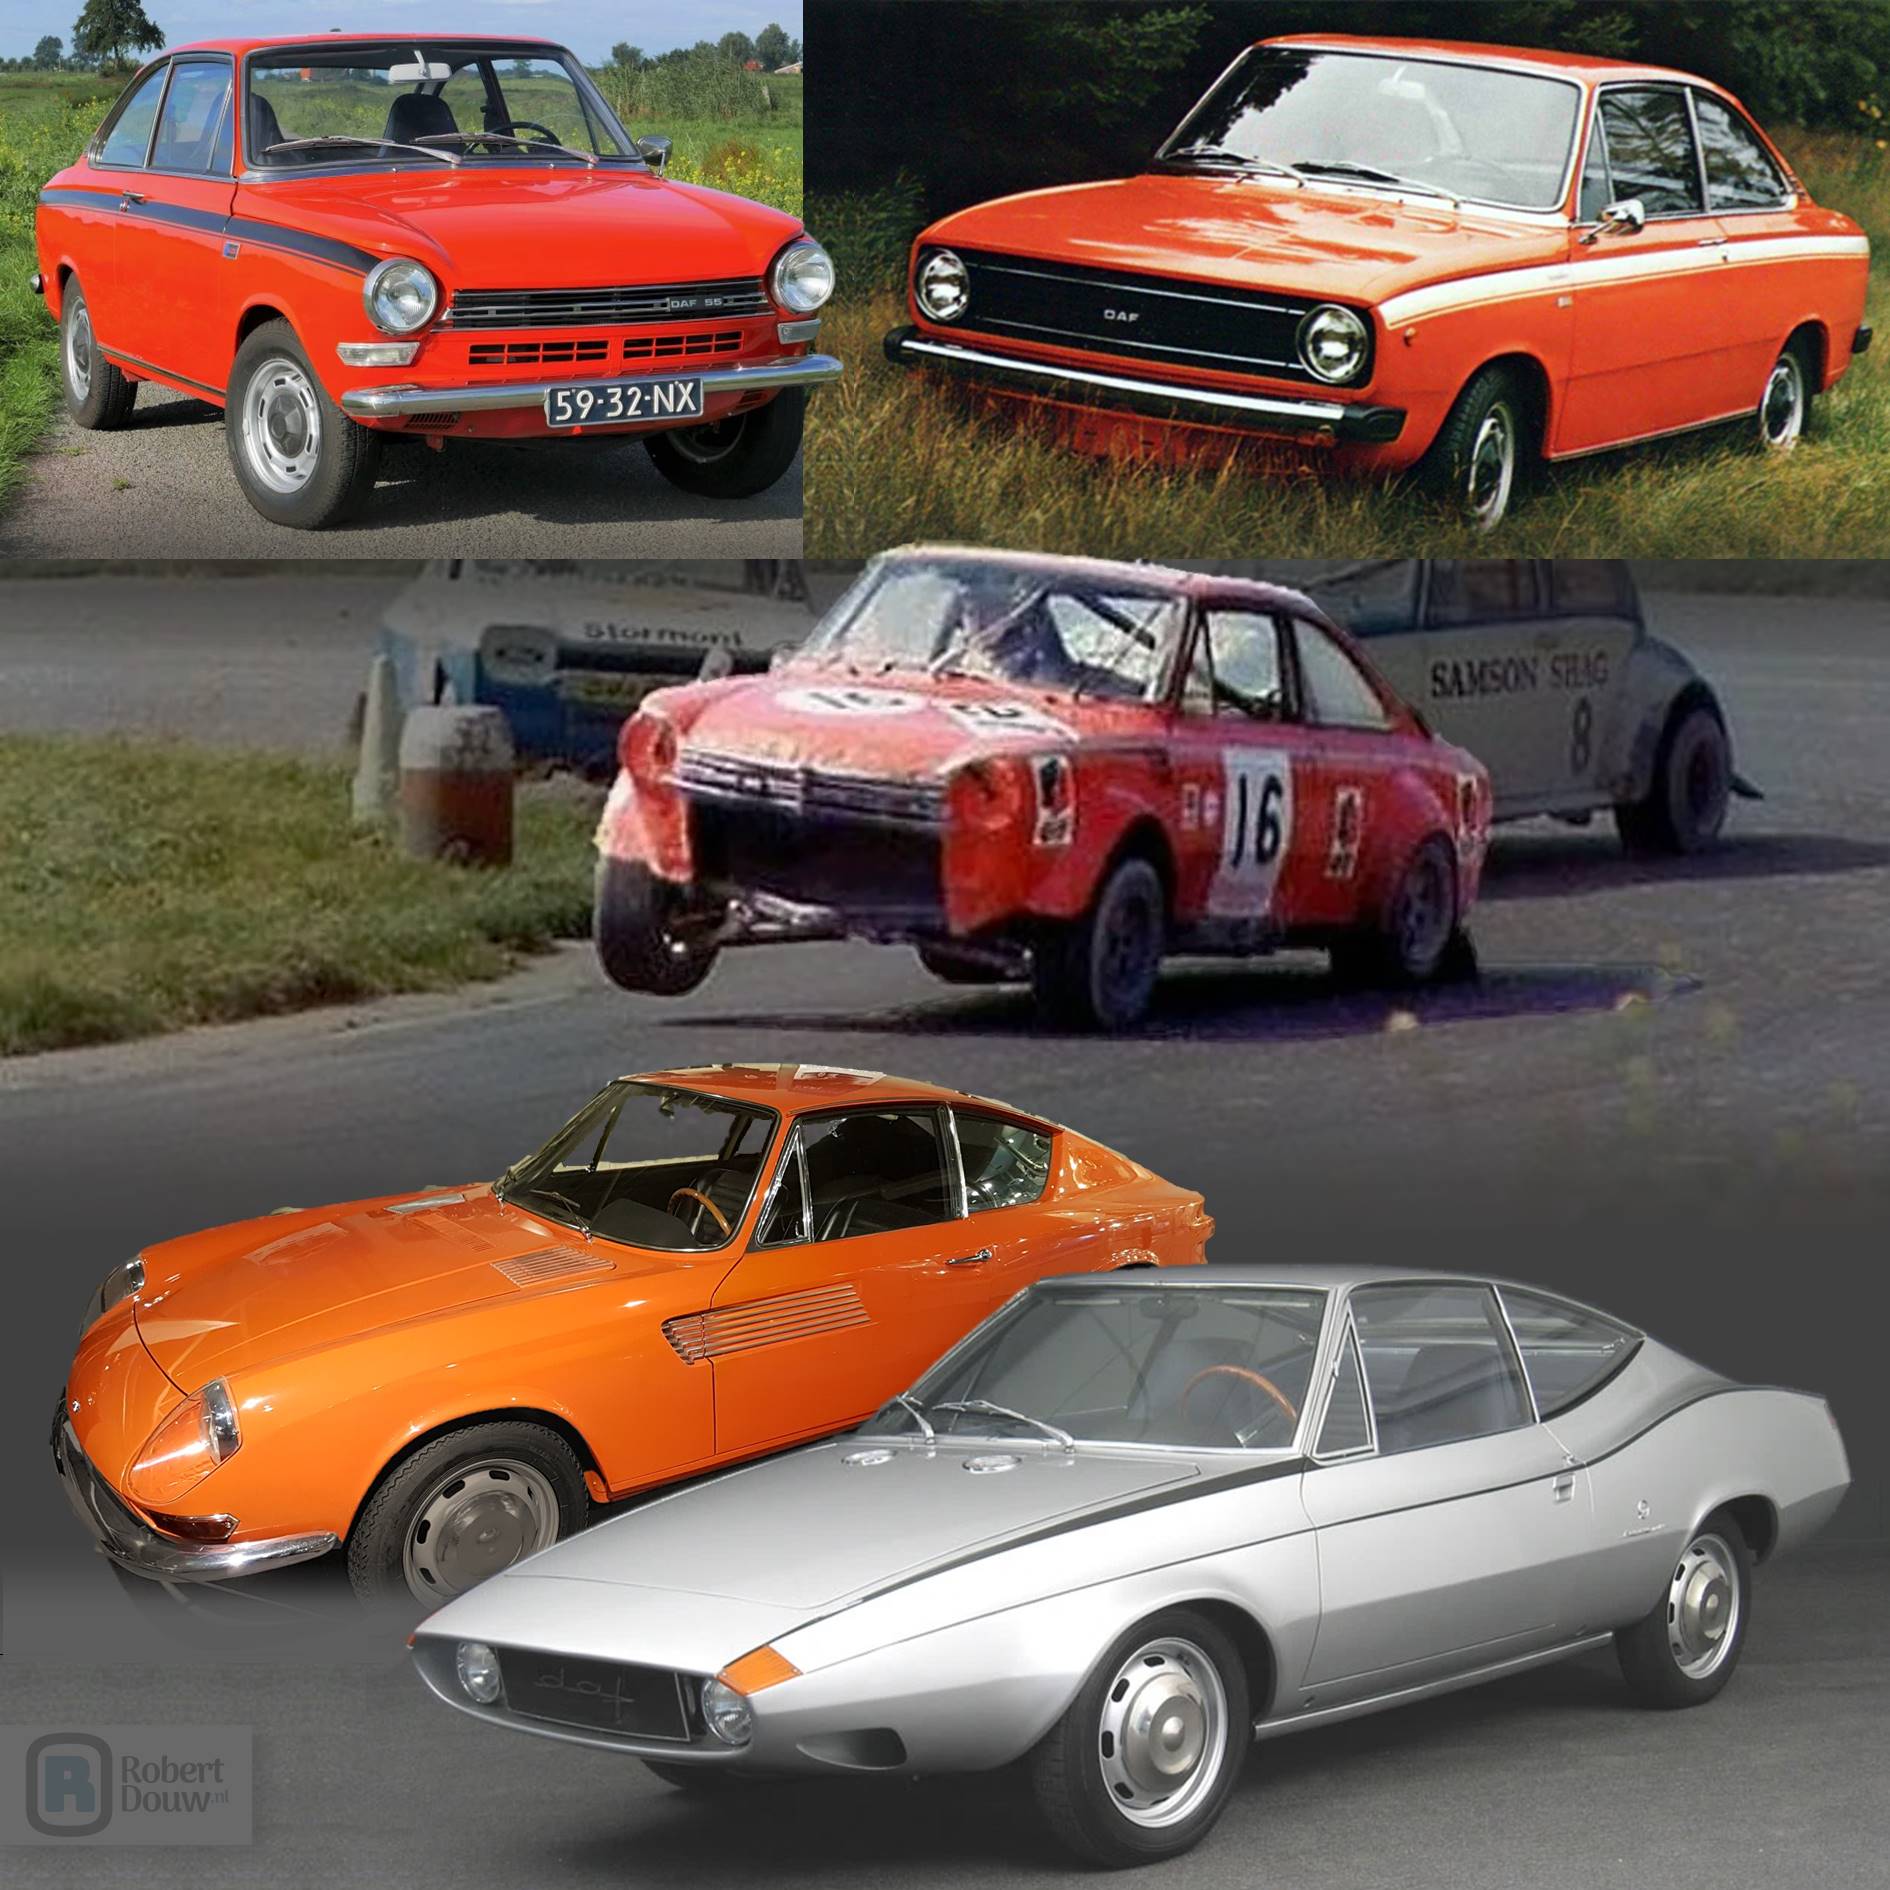 Een tekening en drie foto's van coupés.